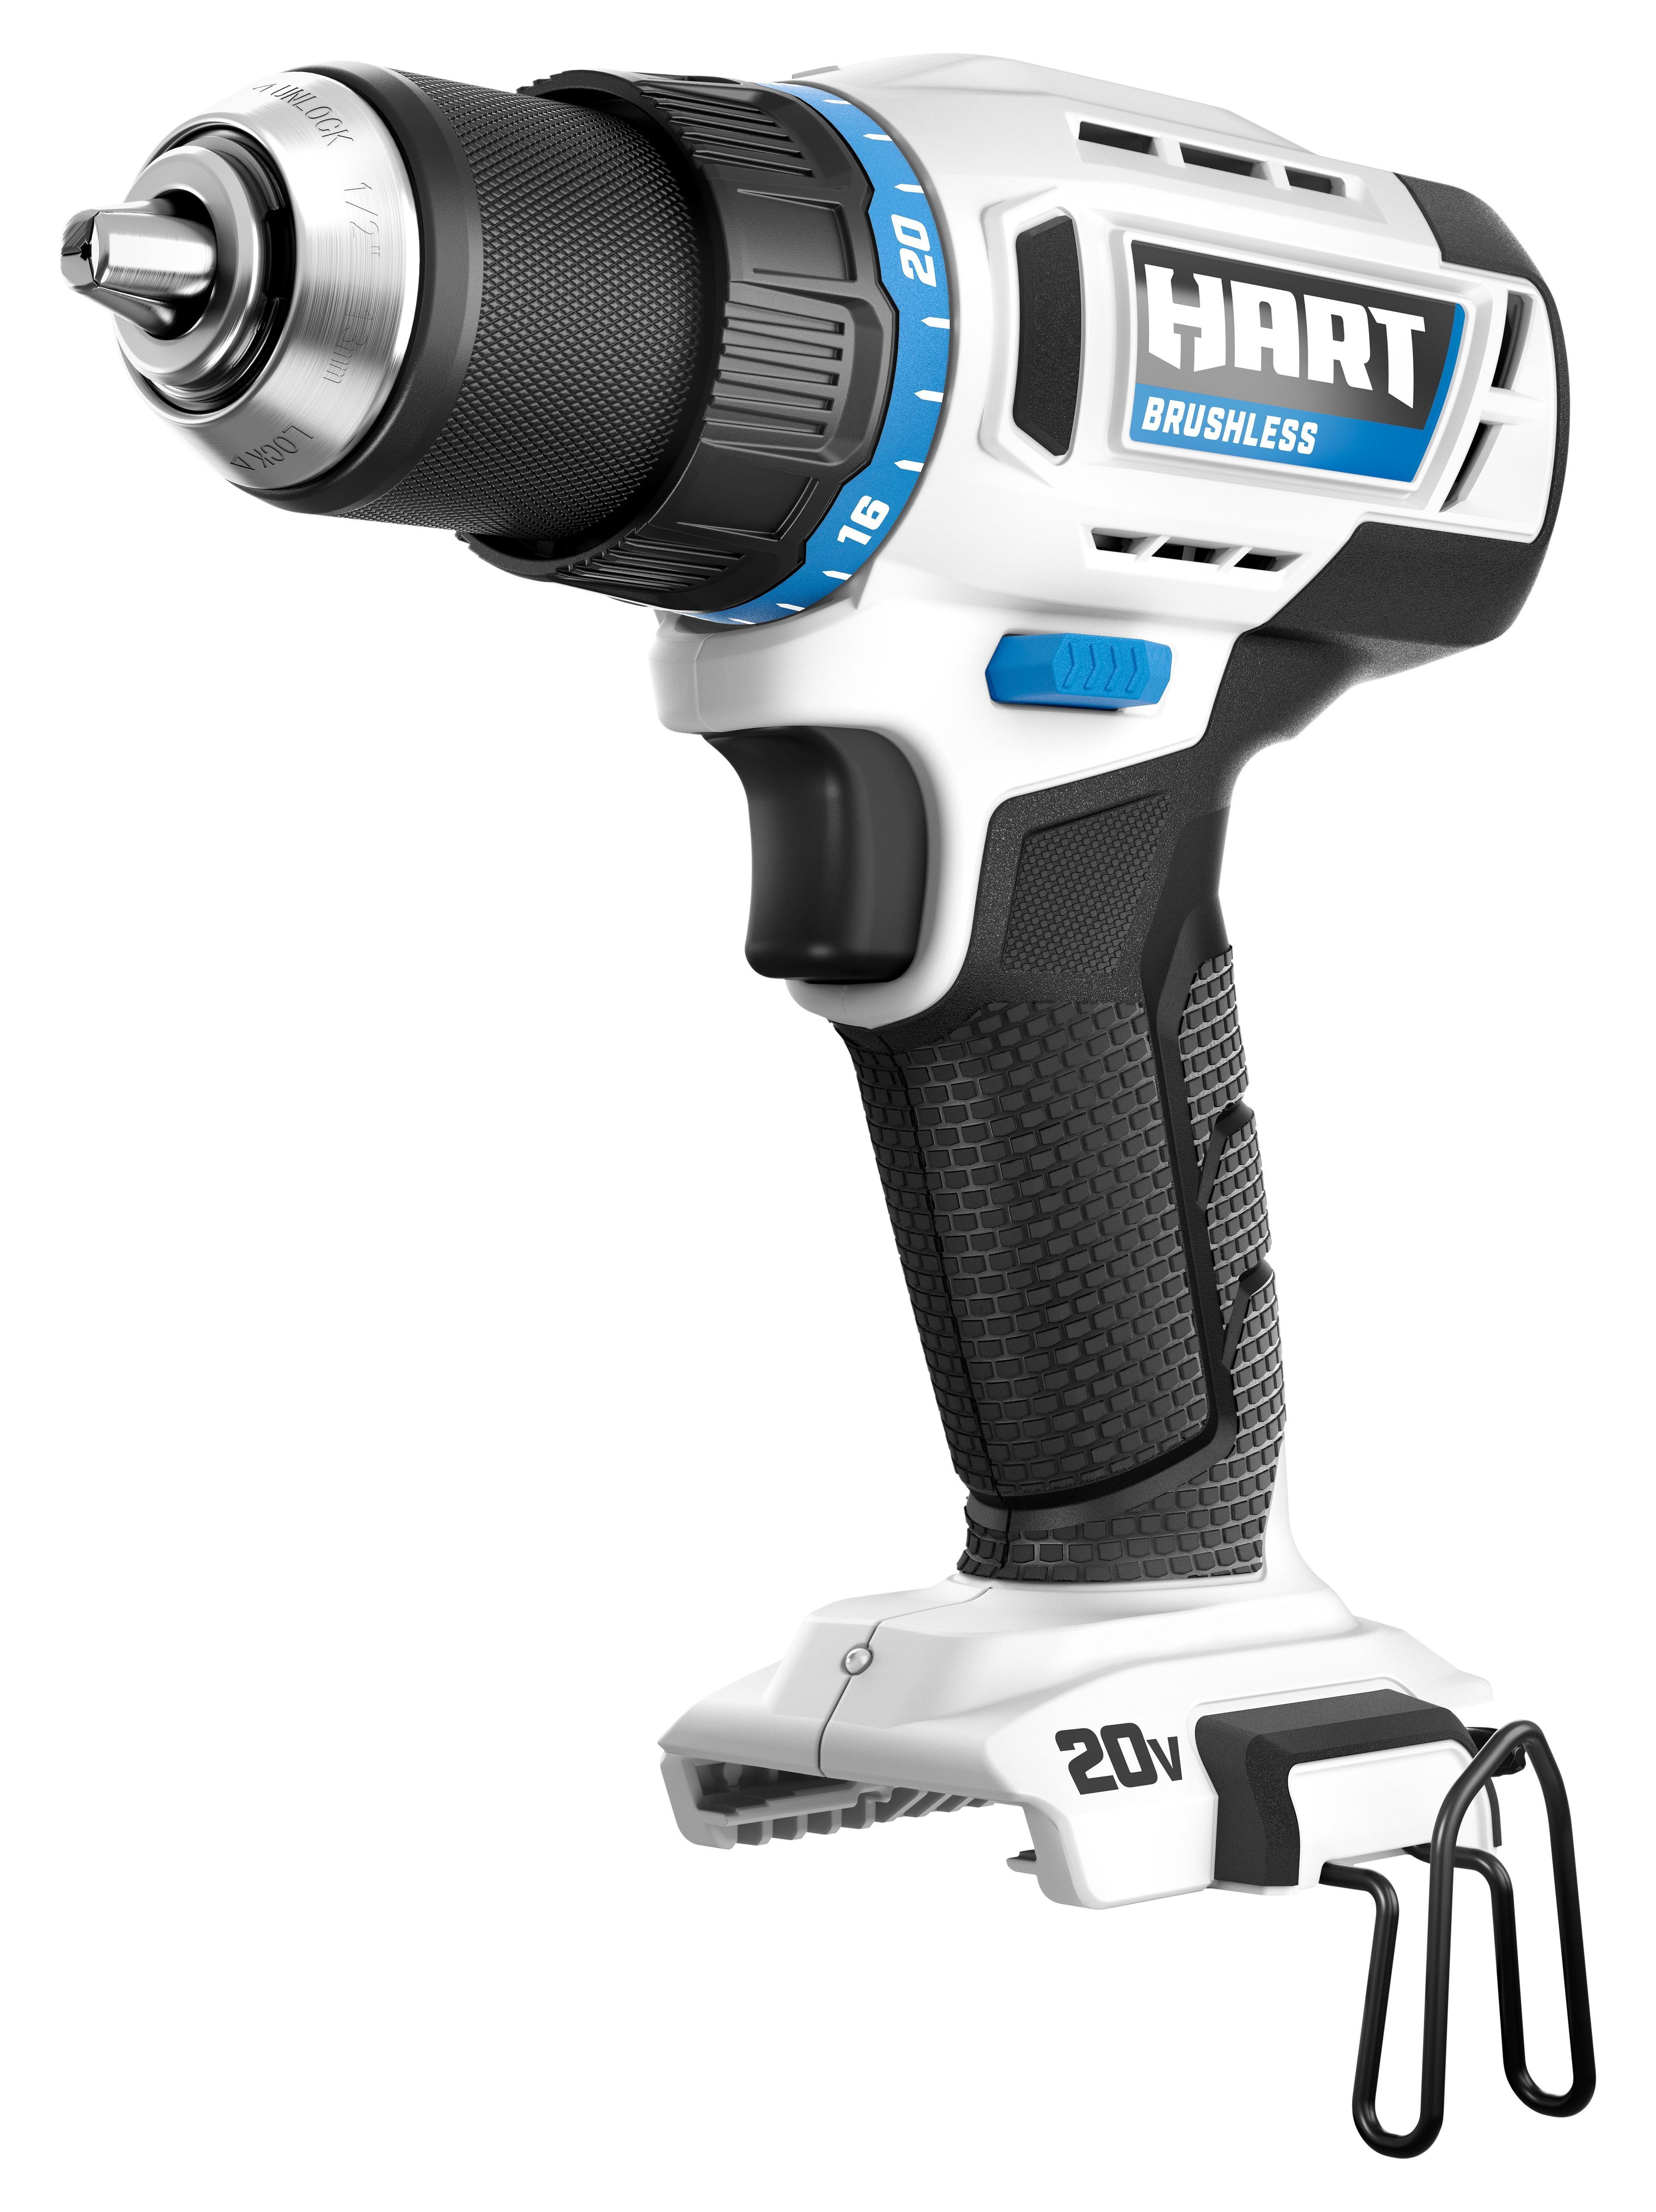 Select HART 20-Volt Tools Clearance B&M $2.25 at Walmart